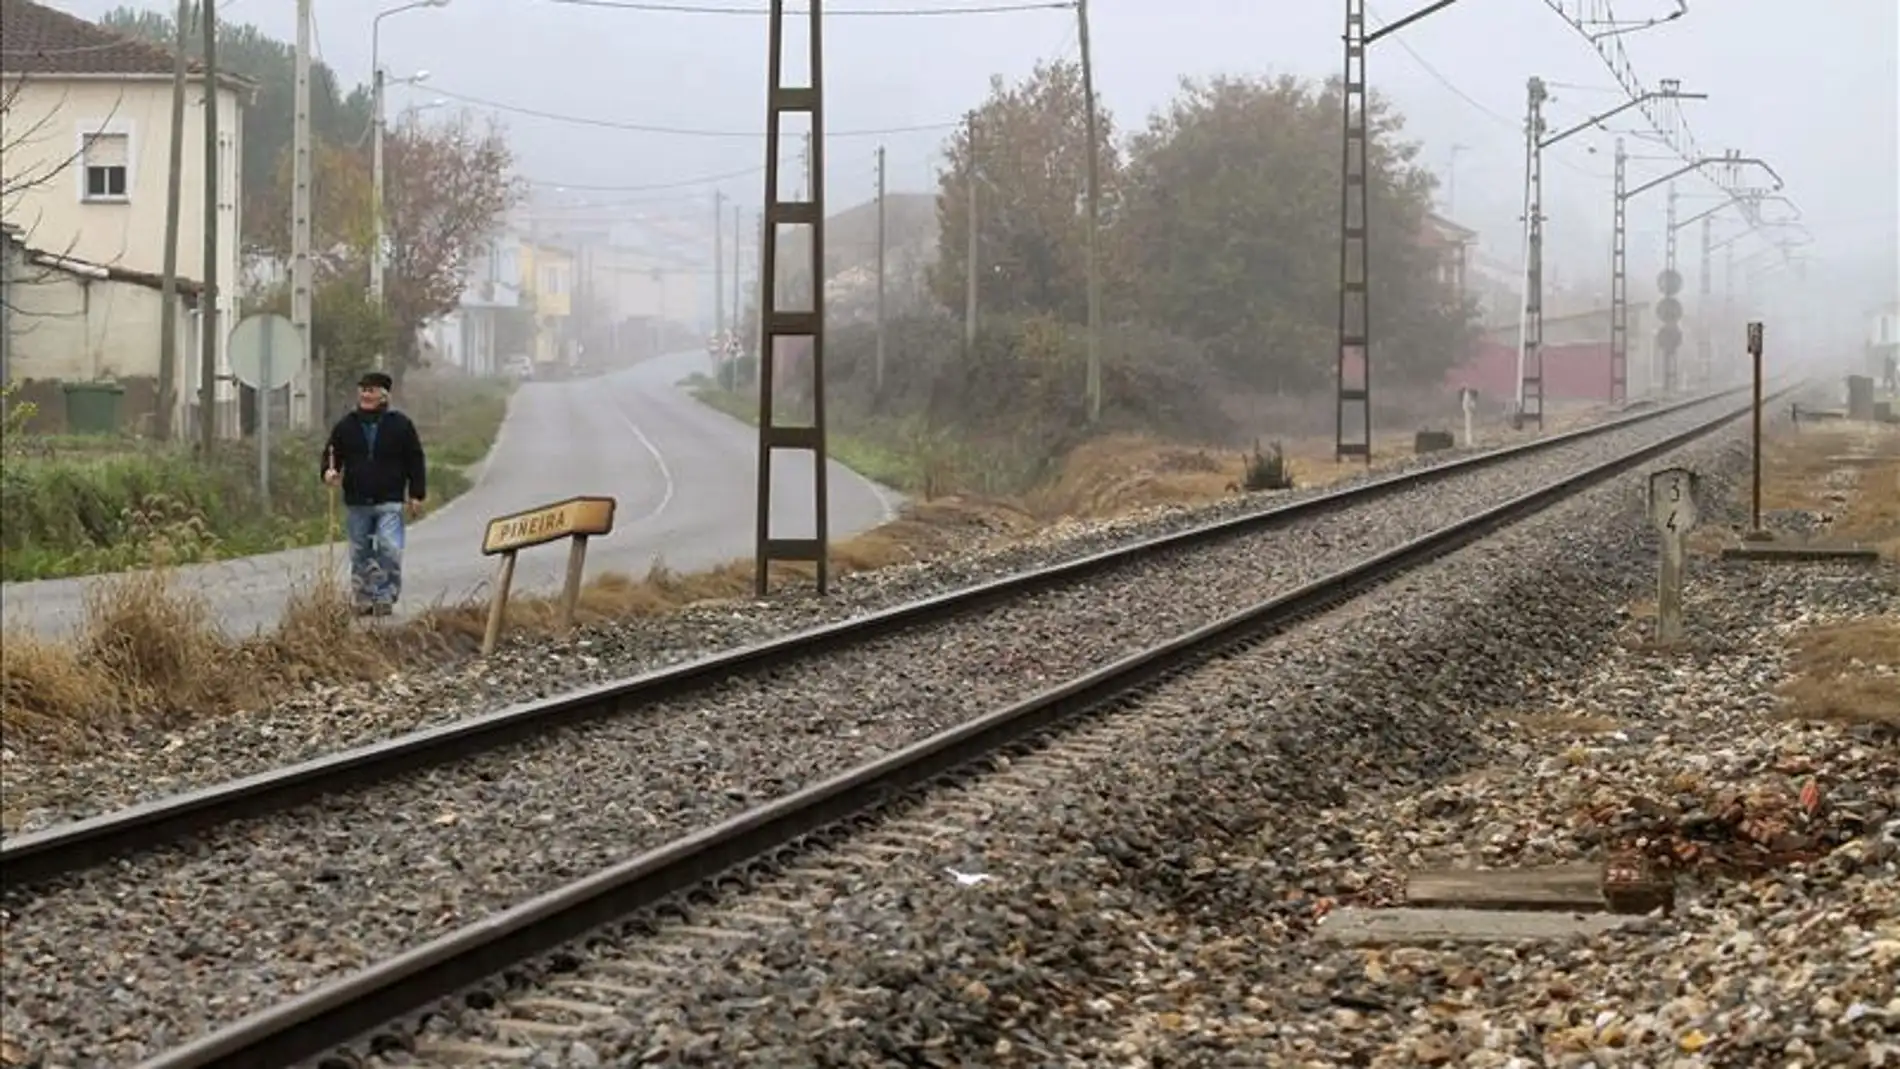 Imagen de archivo de las vías de un tren.